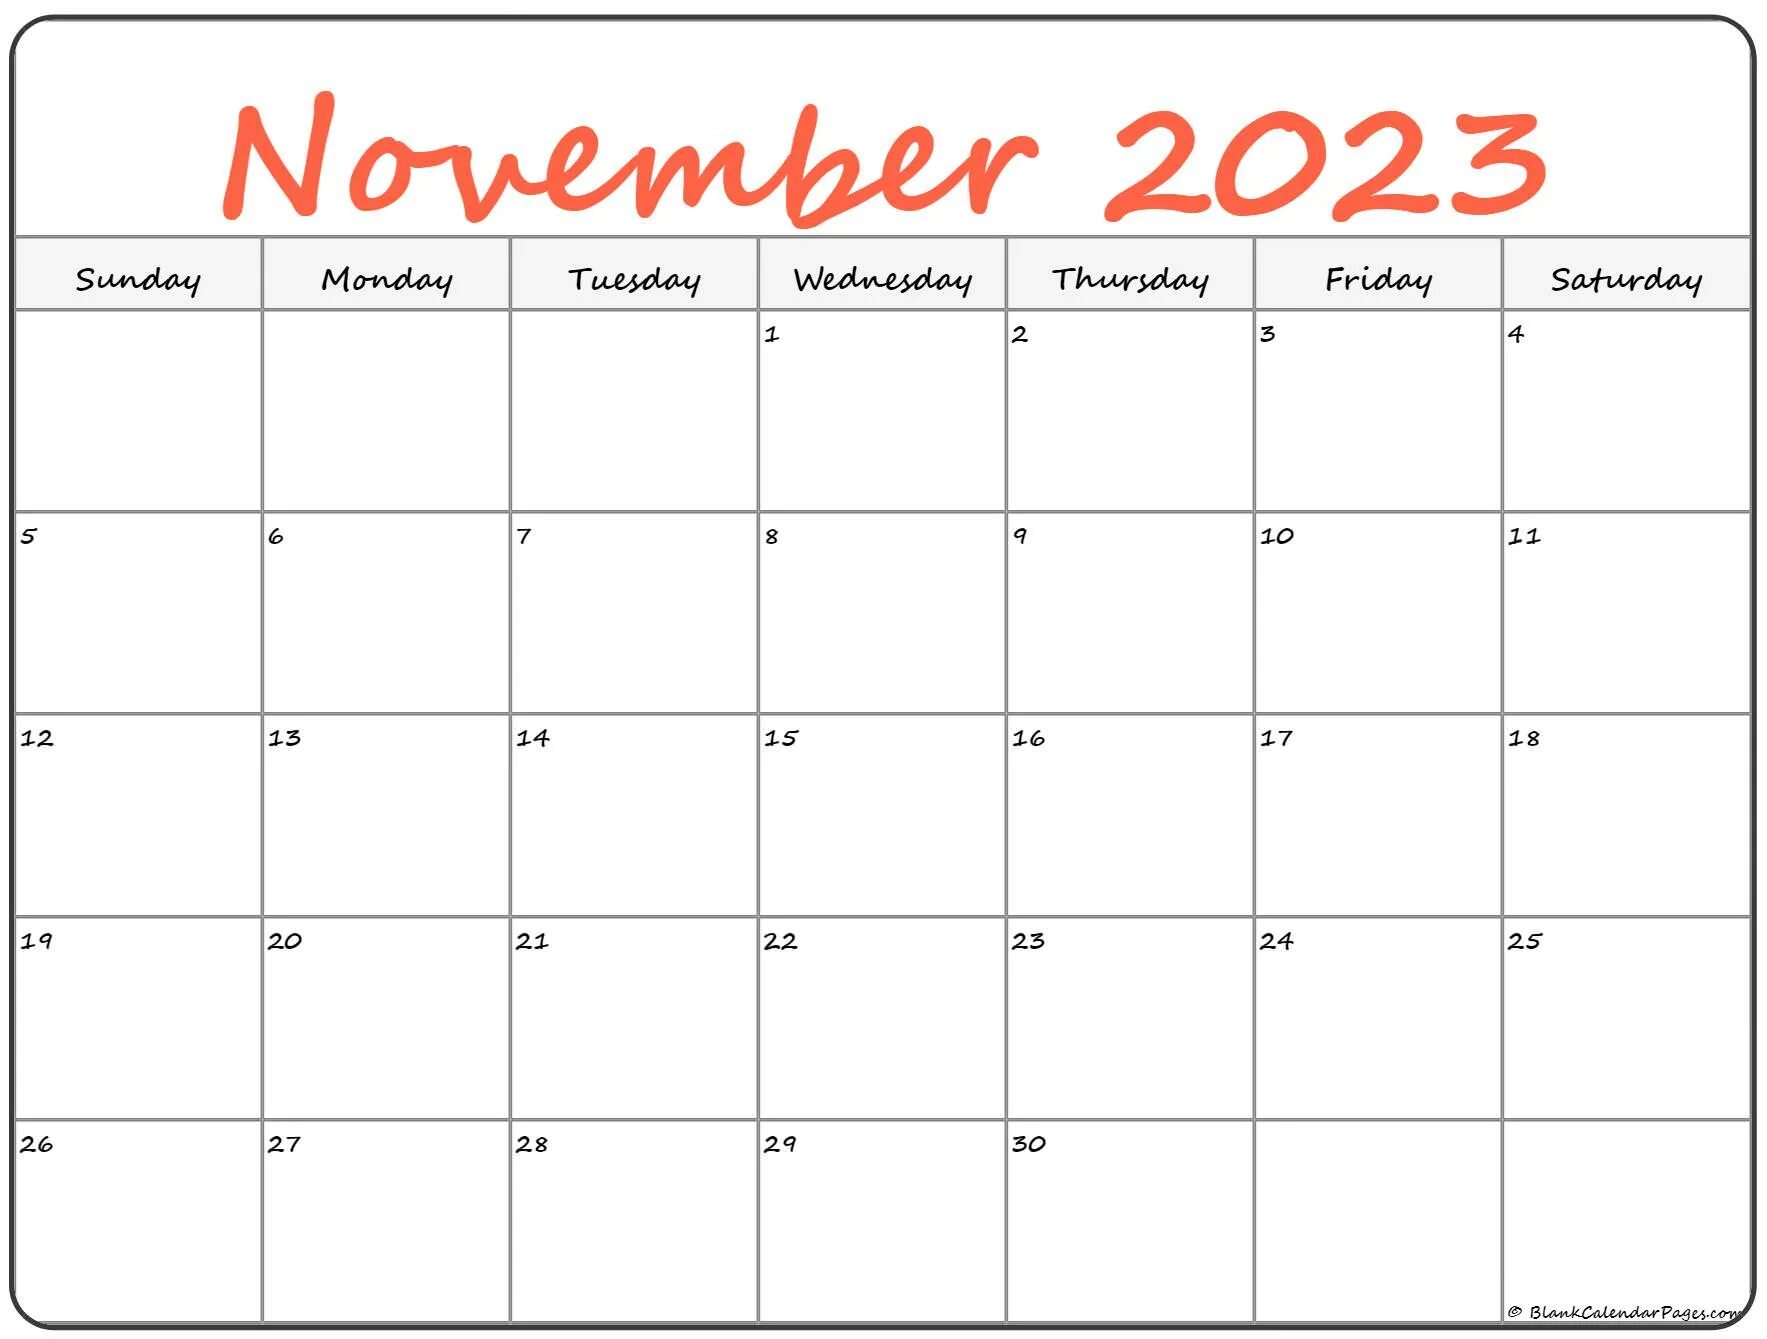 March 2022. Календарь декабрь 2022. Календарь ноябрь 2022. Календарь на март 2022 года.